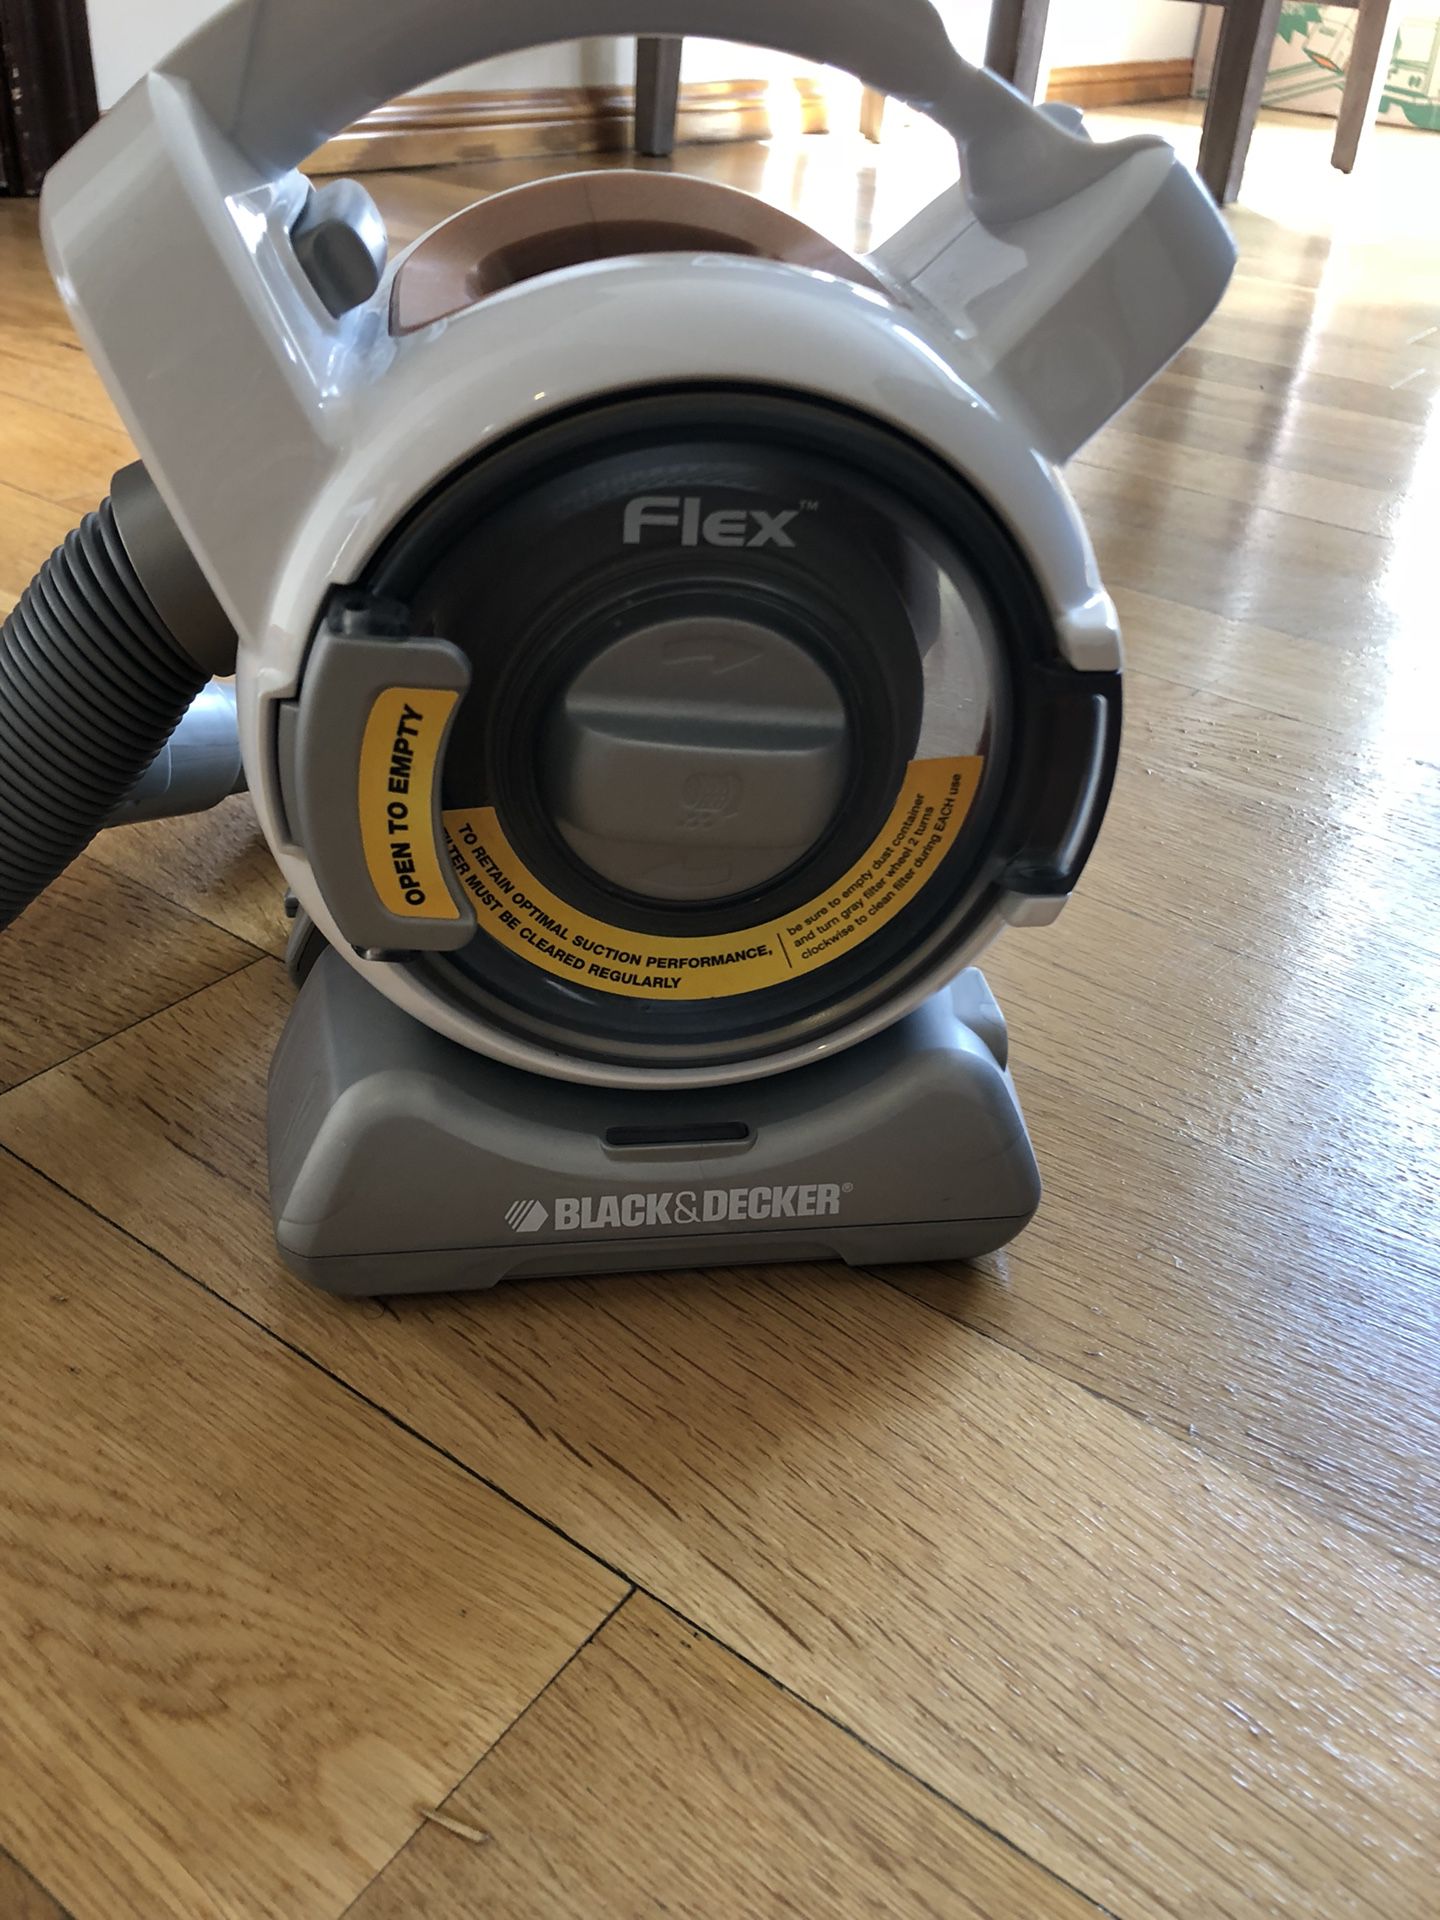 Black decker flex vacuum